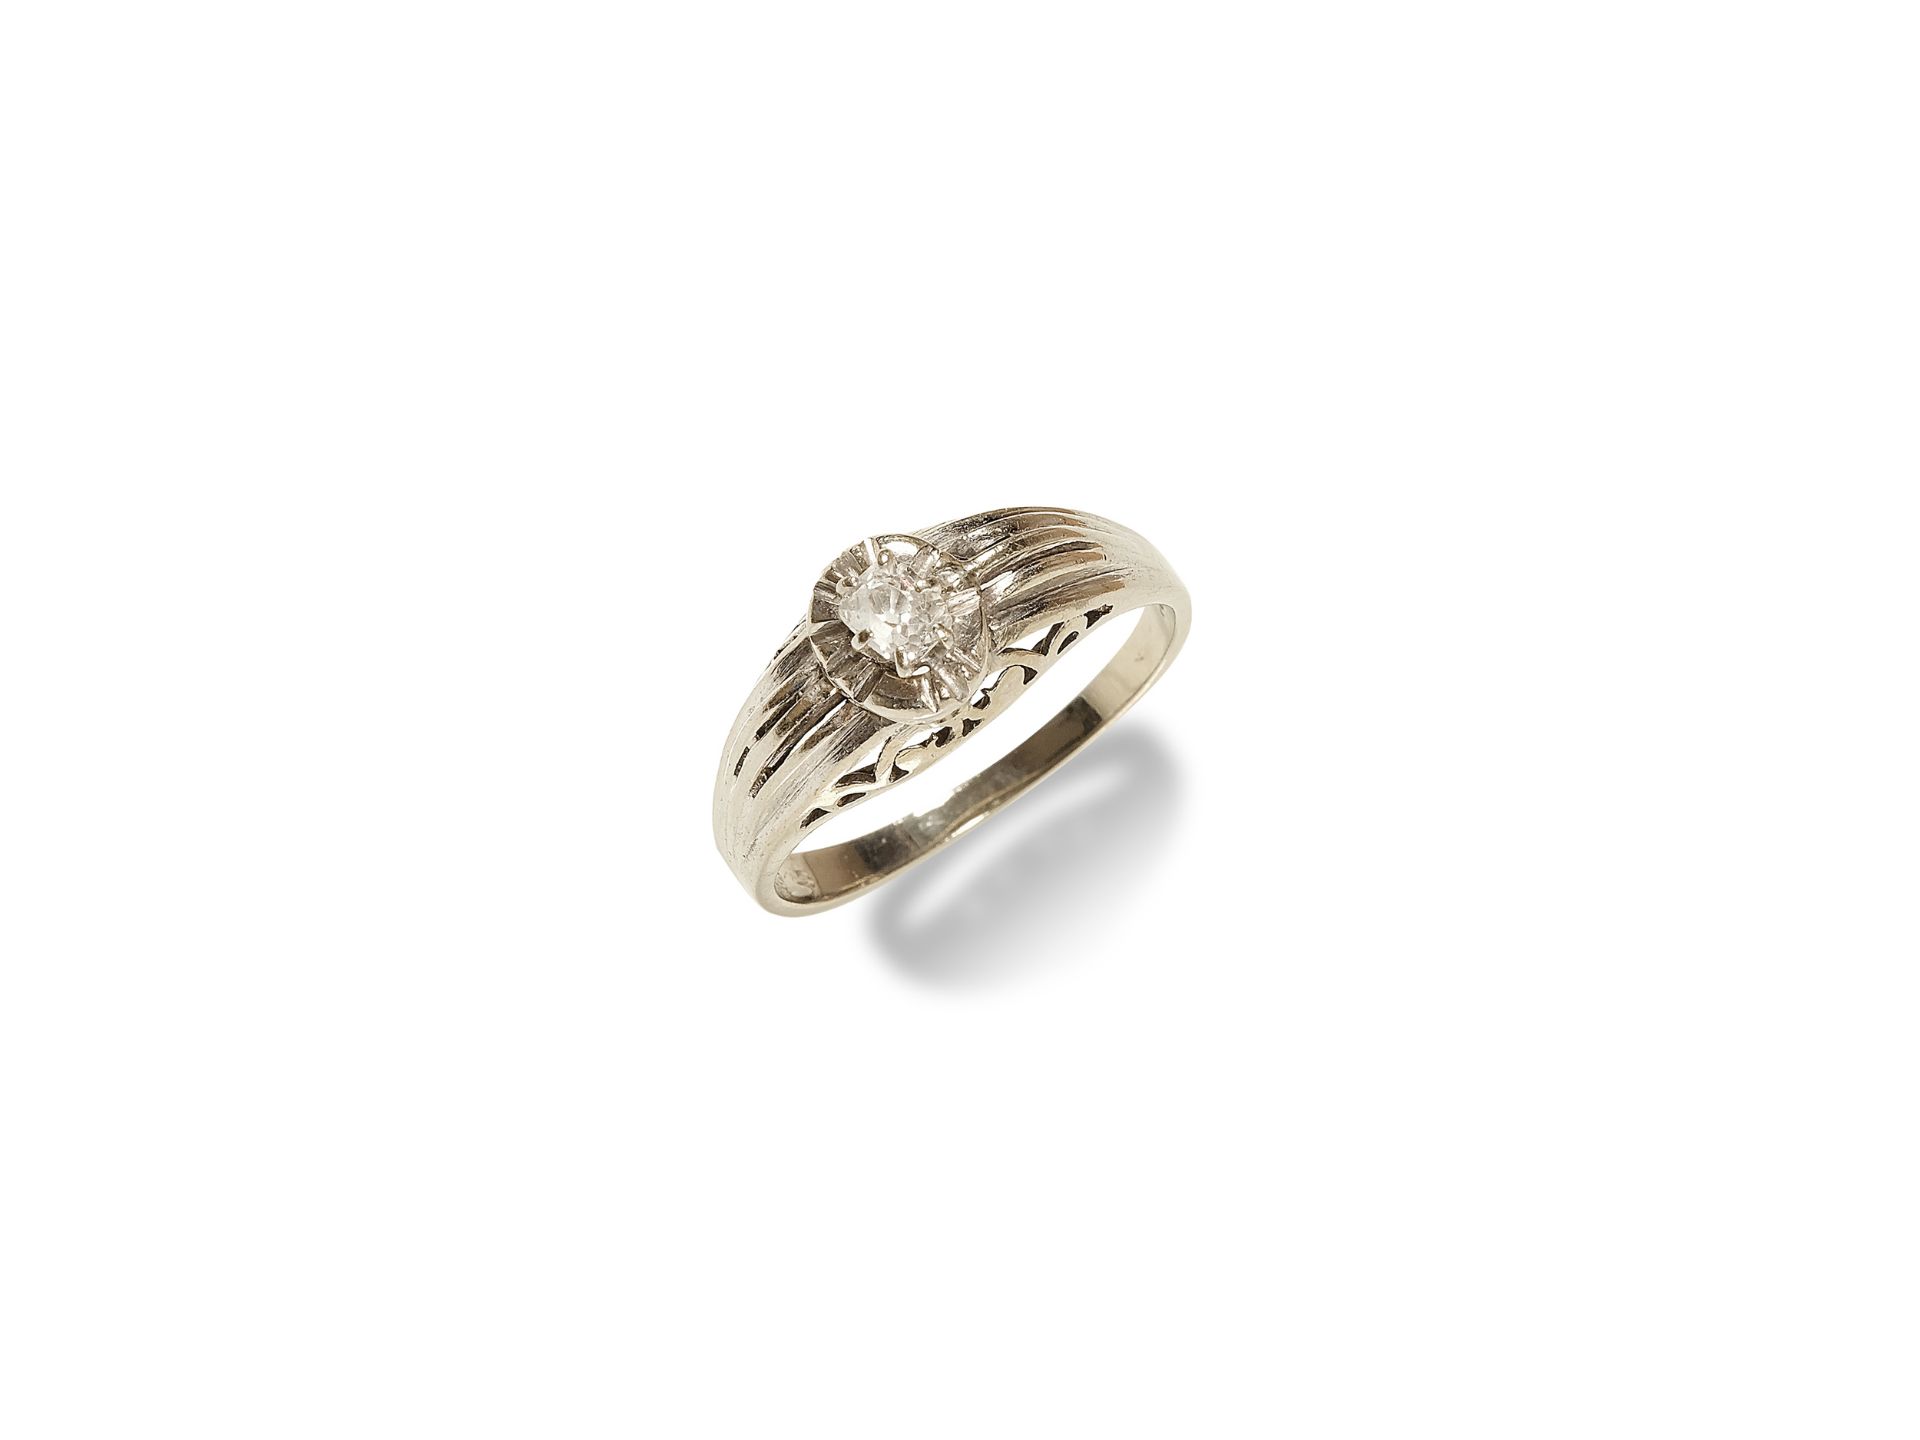 Ladies ring, 
White gold, 14 carat, 
Brilliant solitaire